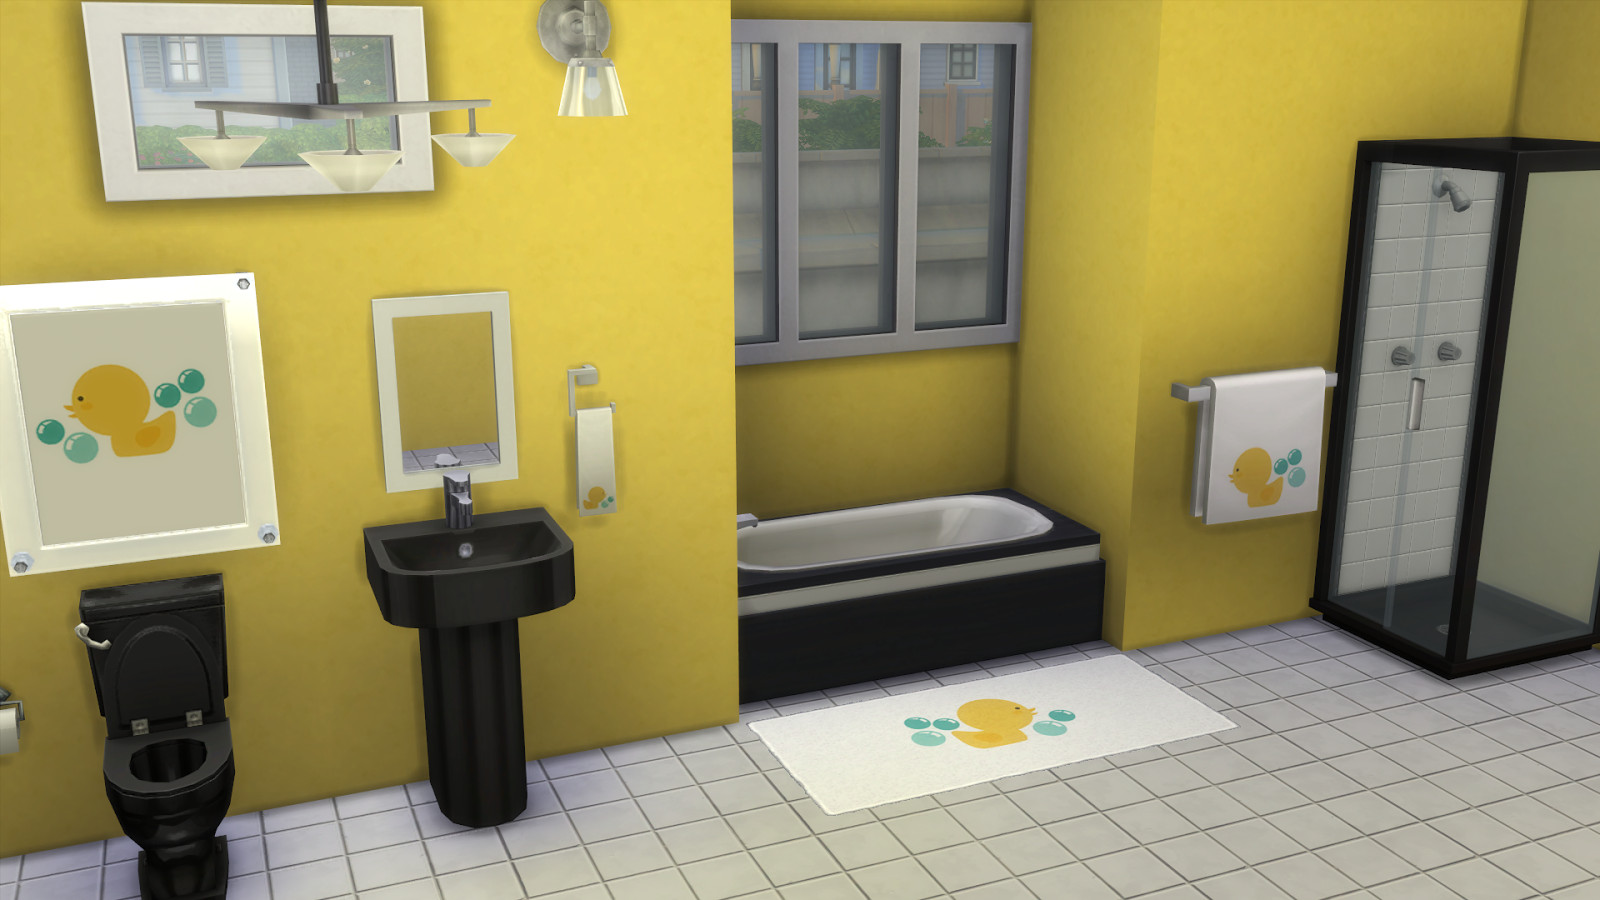 Rubber Ducky Bathroom Decor
 My Sims 4 Blog Rubber Ducky Bathroom Decor Recolors by